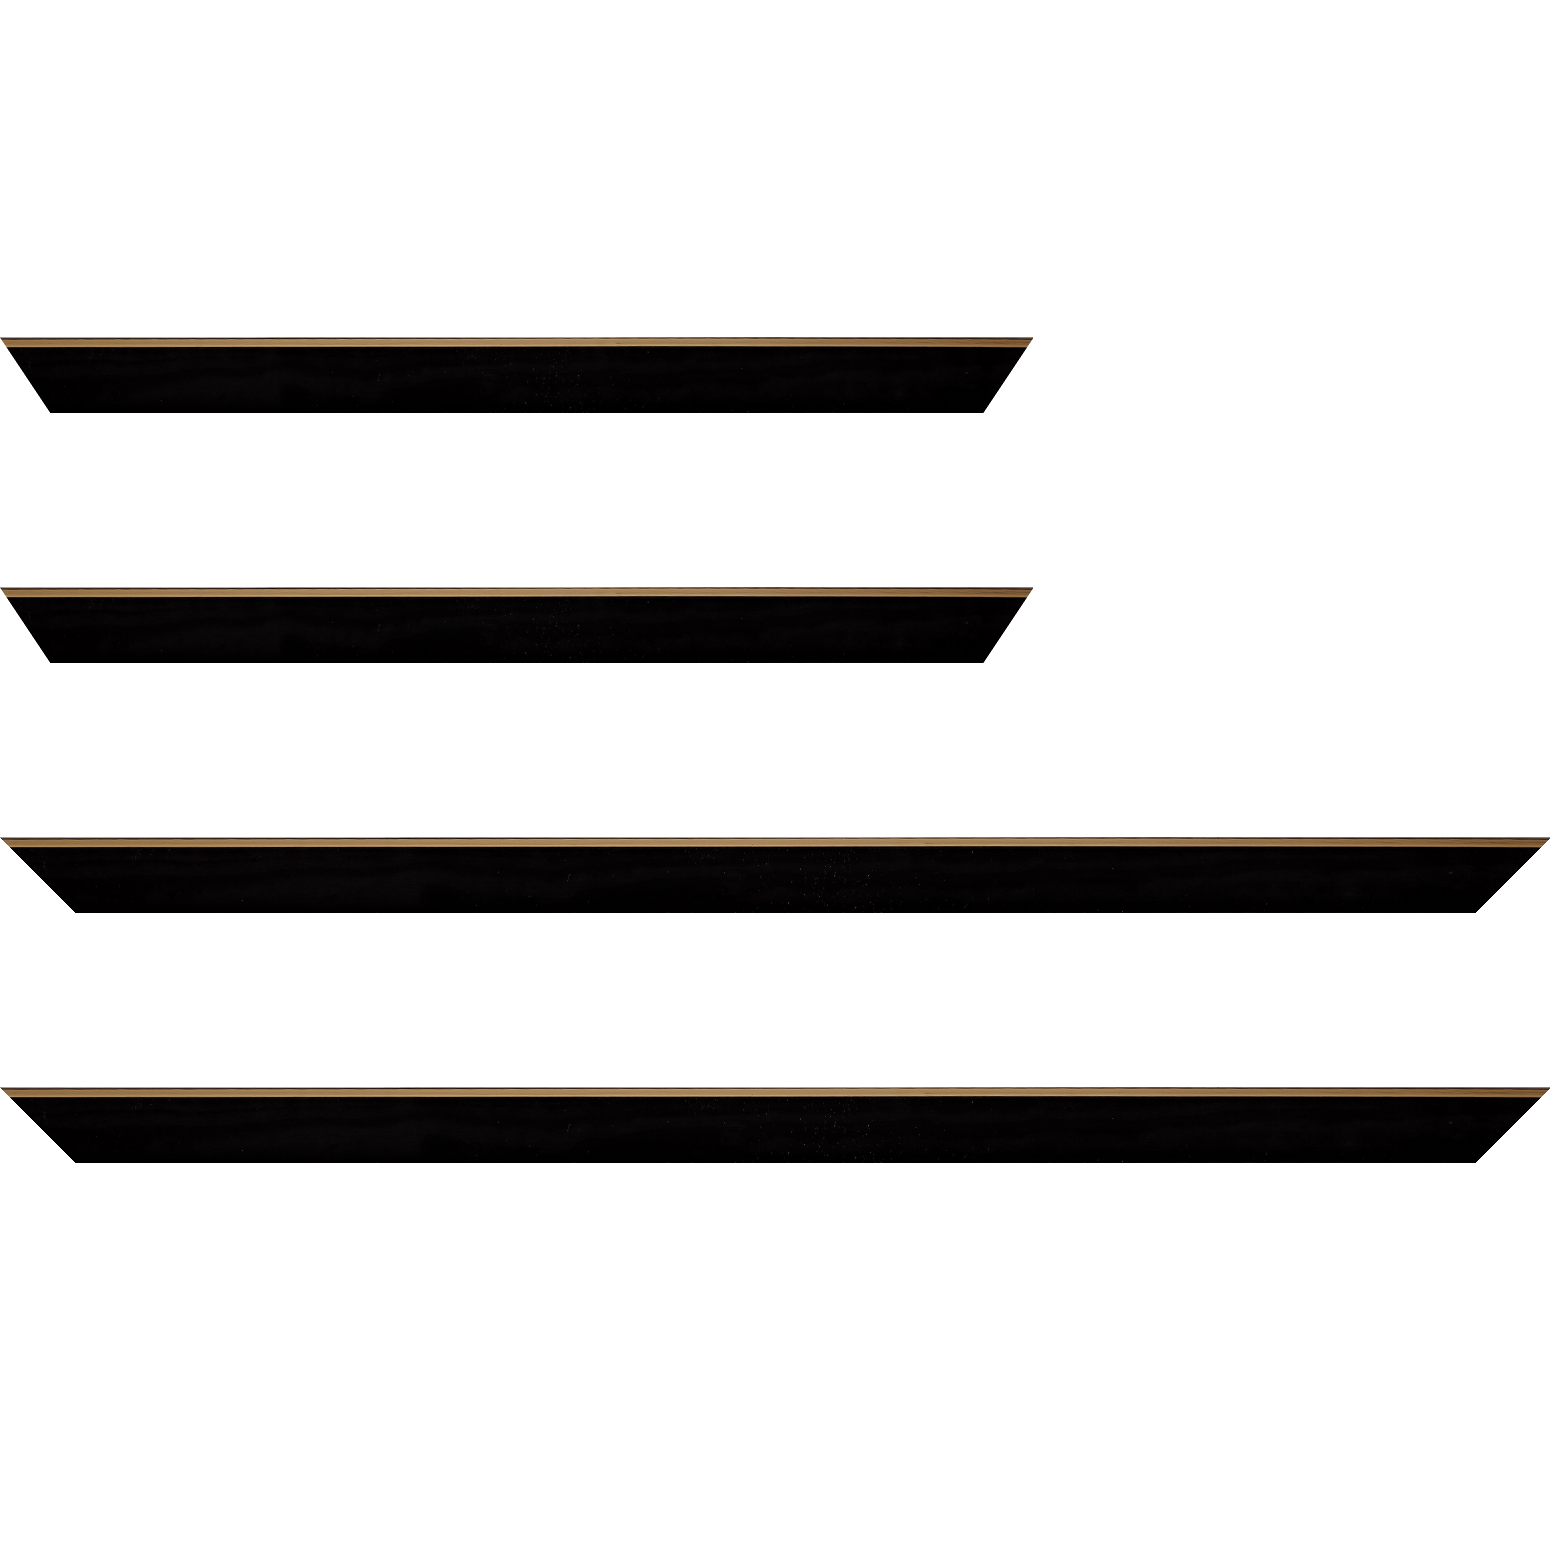 Baguette bois profil arrondi en pente plongeant largeur 2.4cm couleur noir satiné,veine du bois  apparent (pin) , angle du cadre extérieur filet or chromé - 35x24